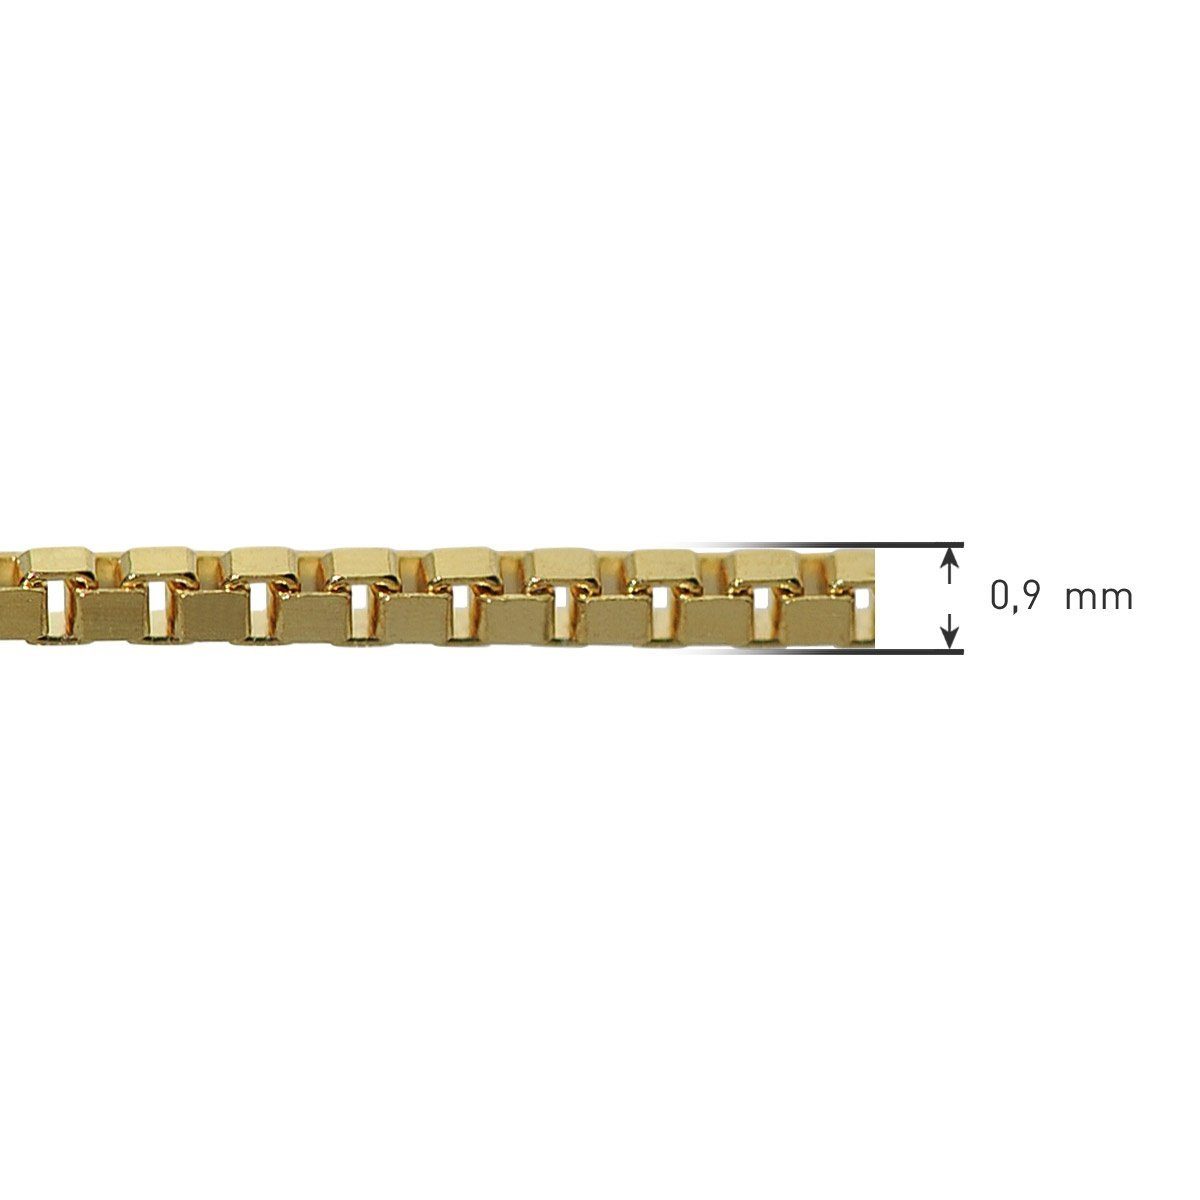 Längen Gold 333 36-60 mm 0,9 trendor Kette ohne Anhänger Venezianer Feine Kette cm